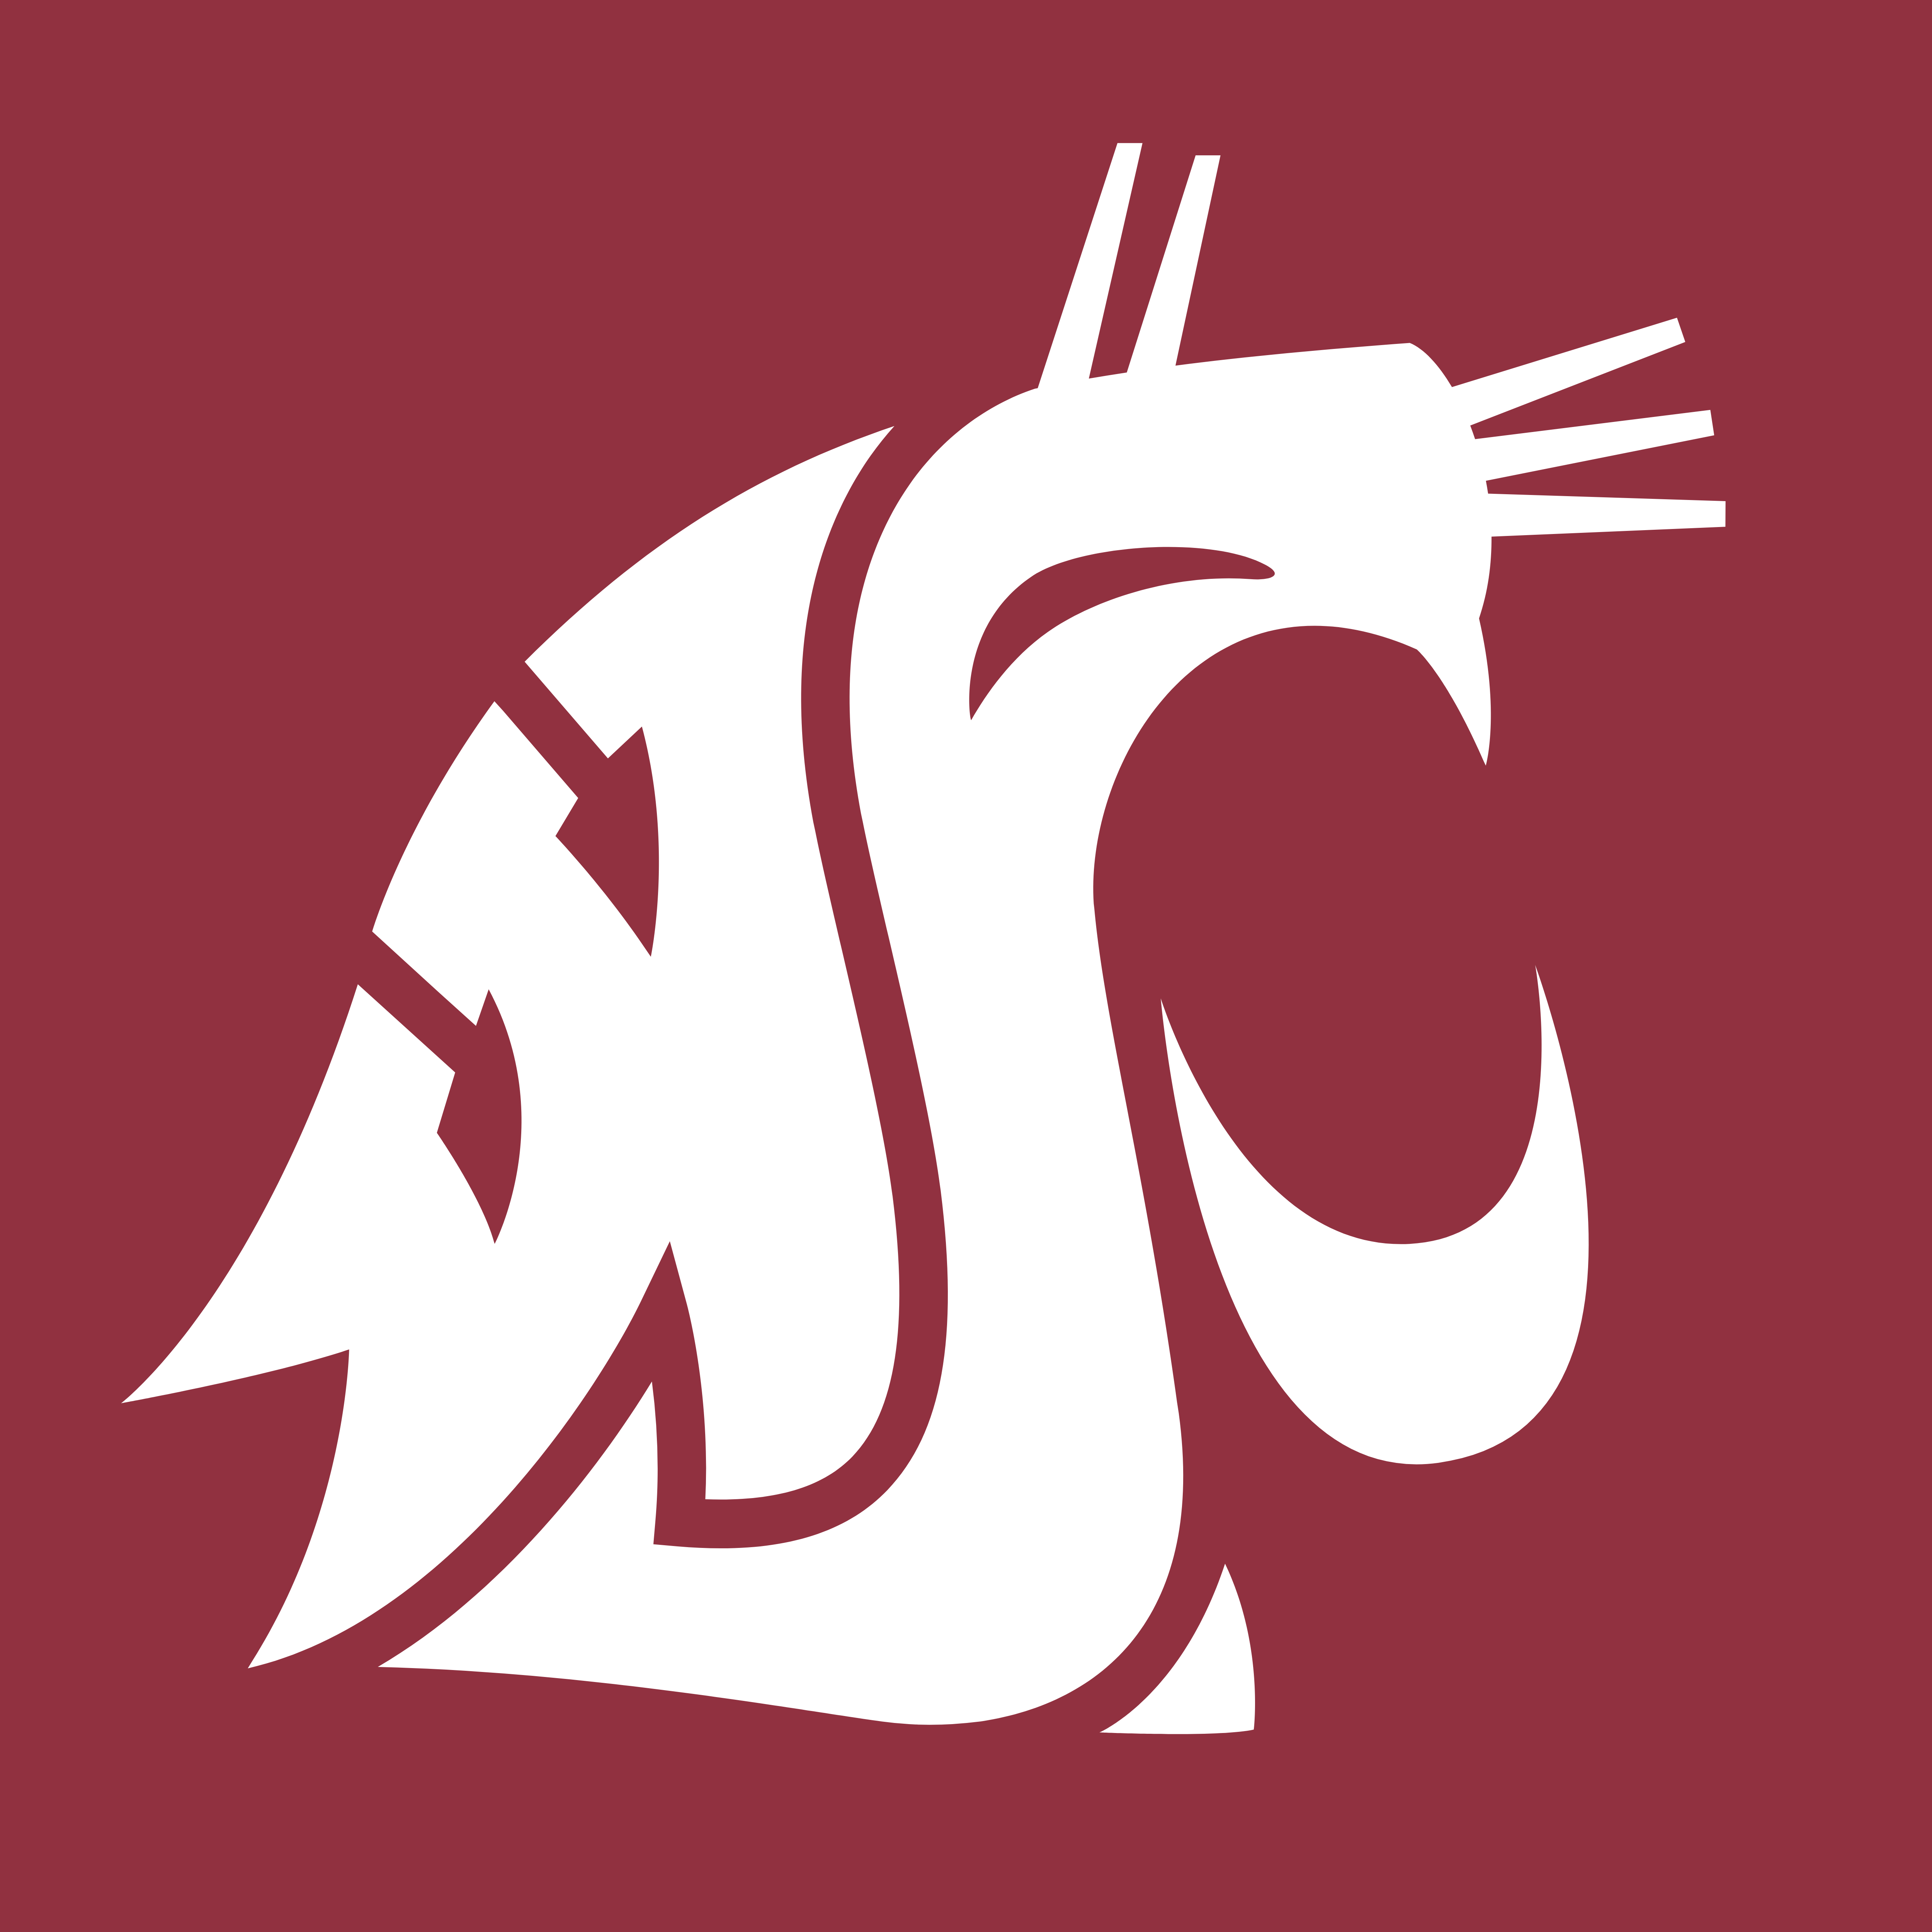 Washington State New Logo - Washington State Cougars – Logos Download